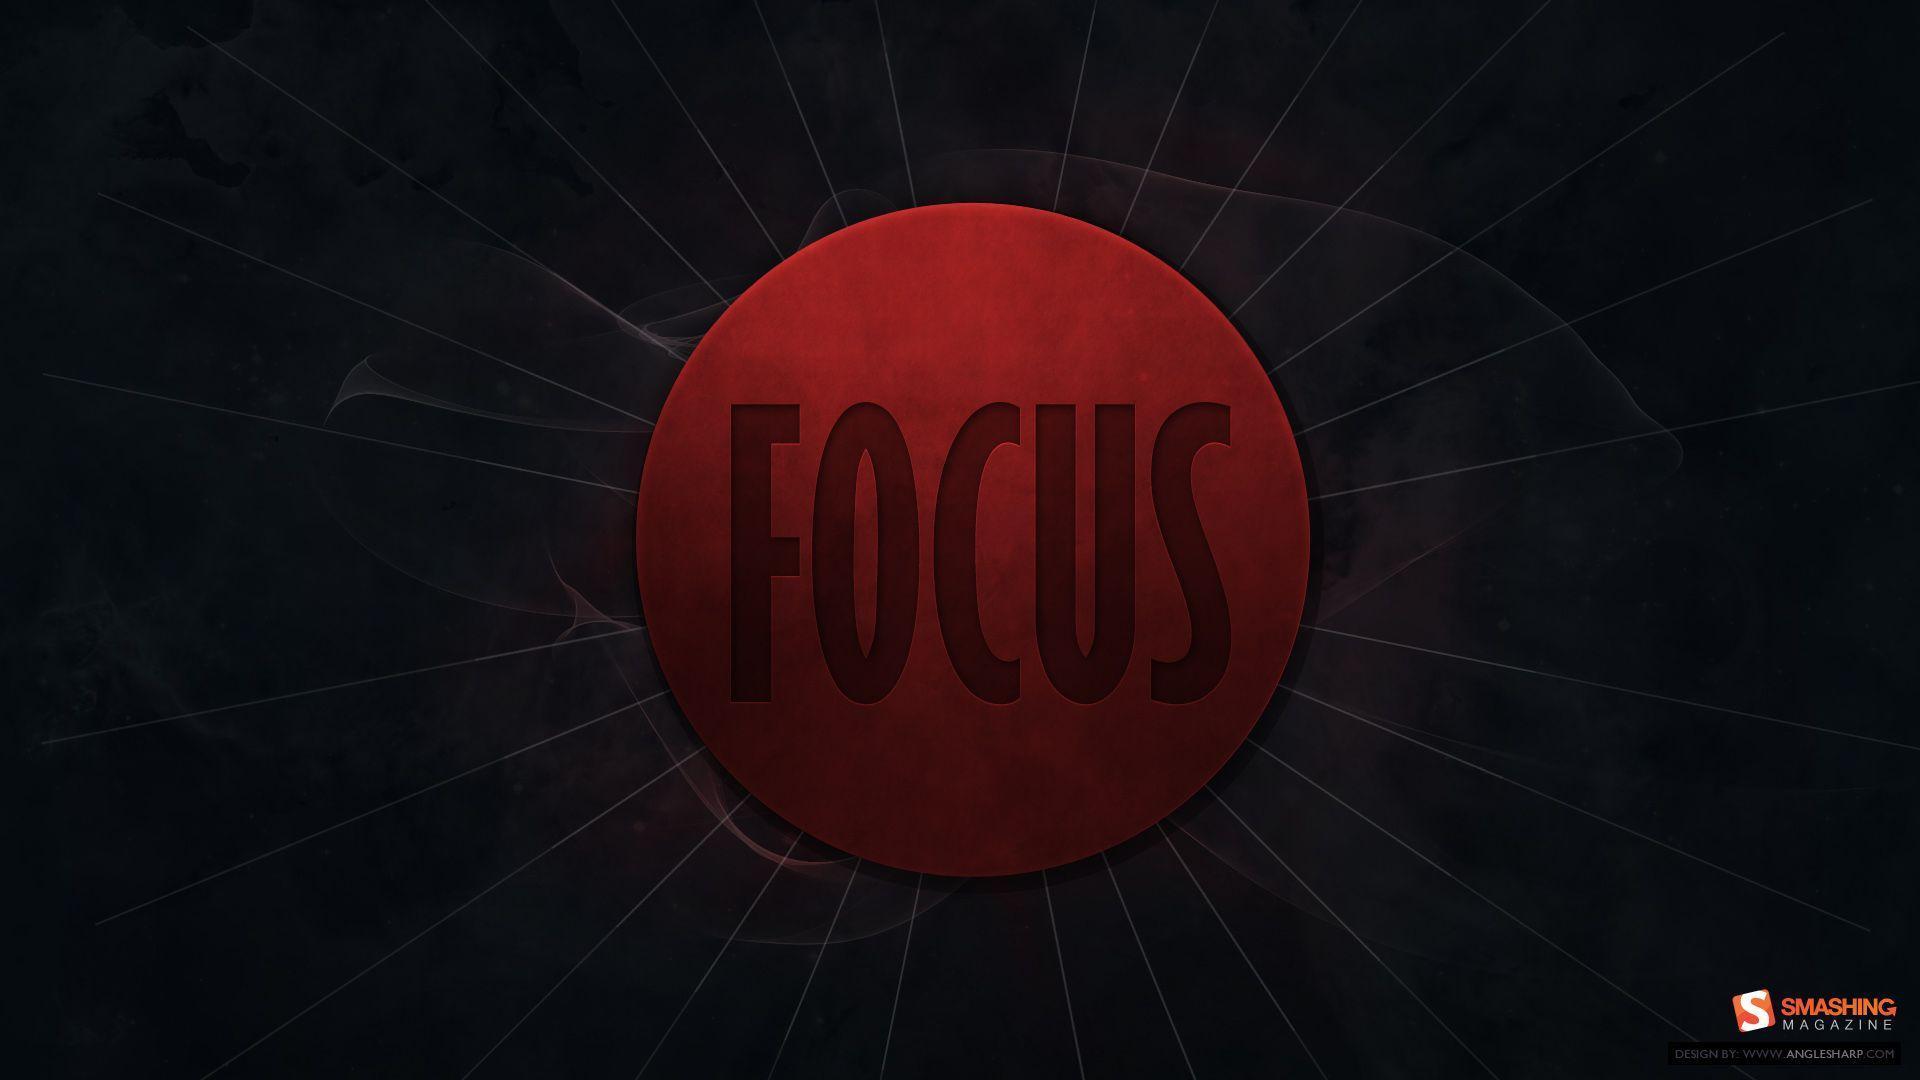 Focus wallpaper. Focus